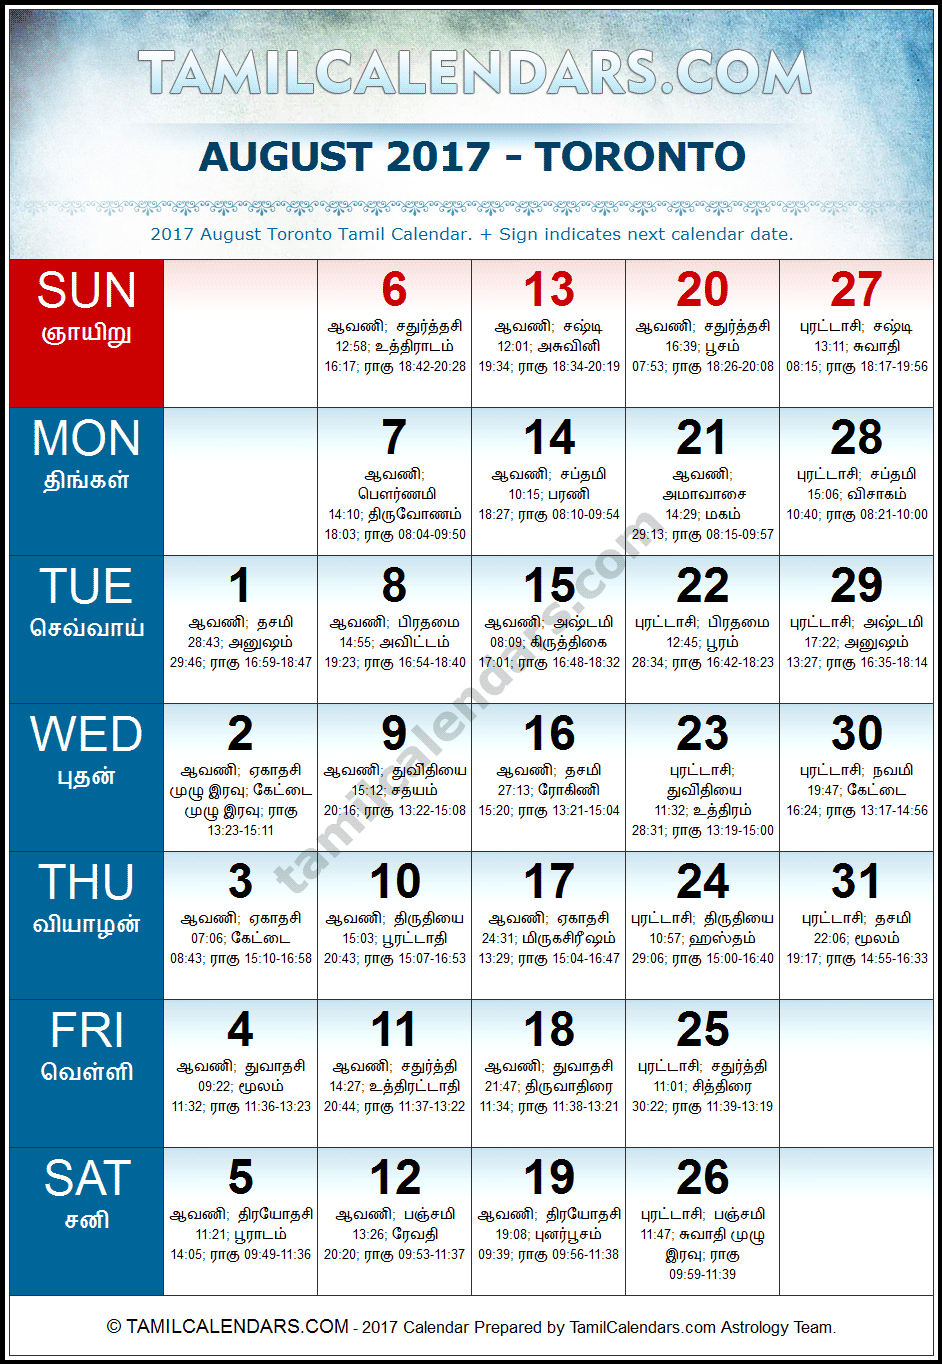 August 2017 Tamil Calendar for Toronto, Canada